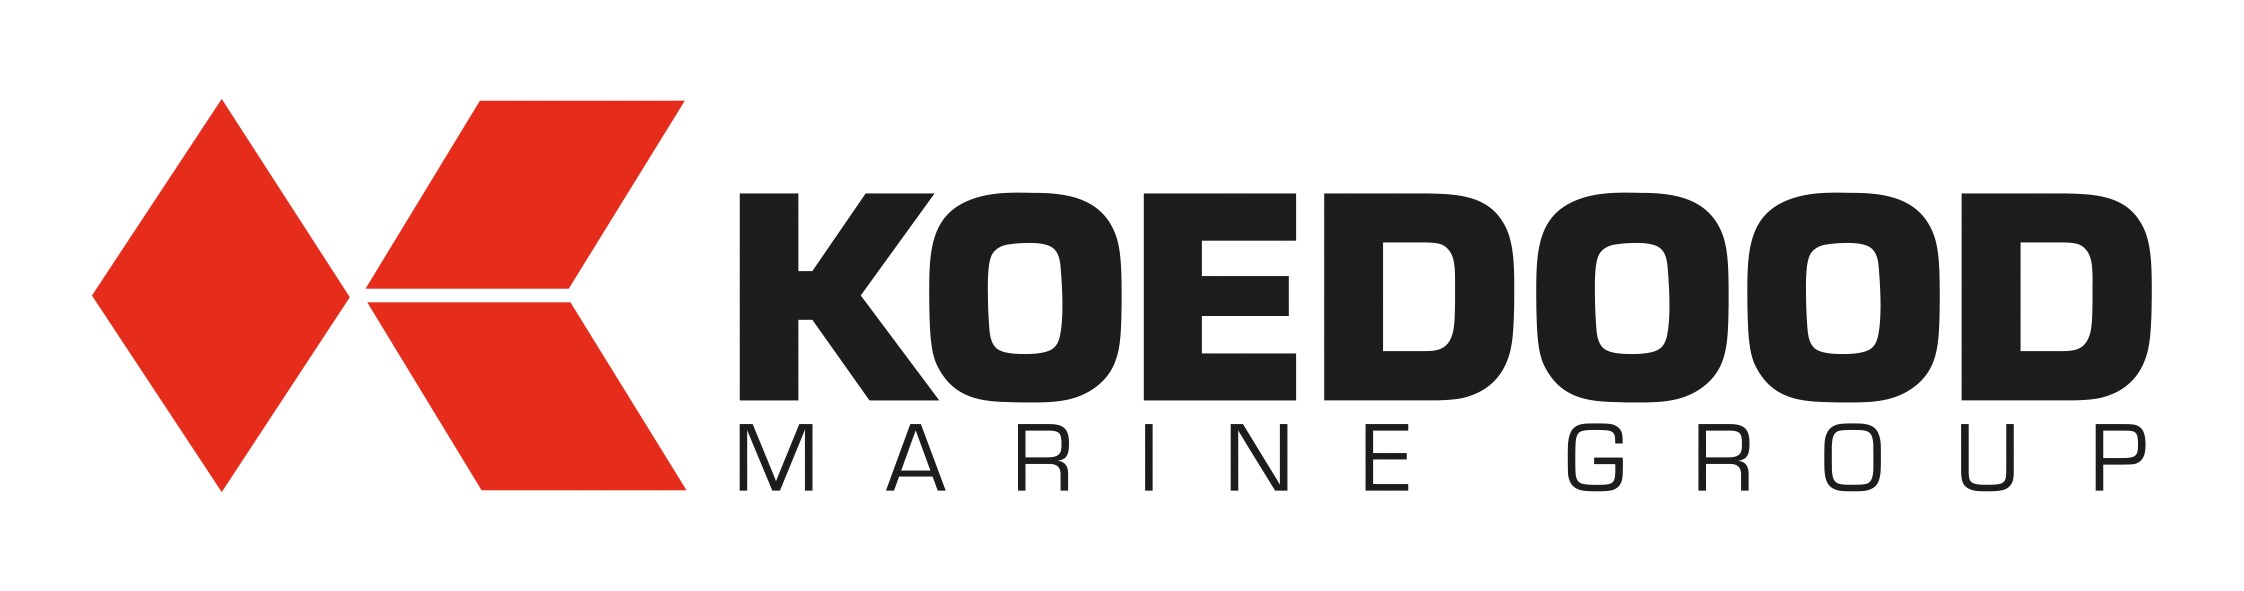 Koedood Marine Group.